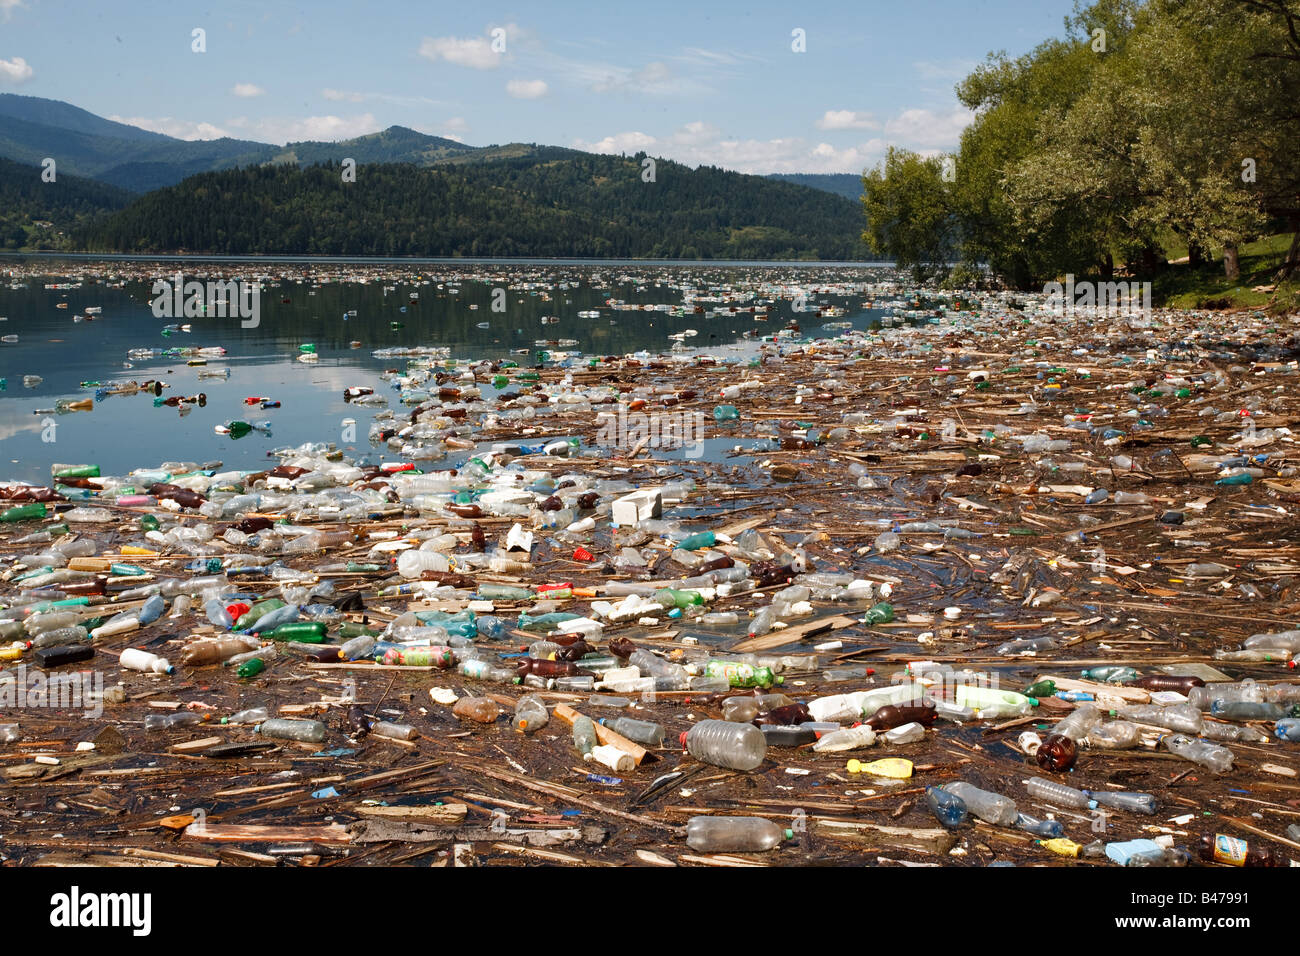 Tonnes de bouteilles en plastique et autres déchets flottant sur un lac magnifique, le lac Bicaz, Roumanie Banque D'Images